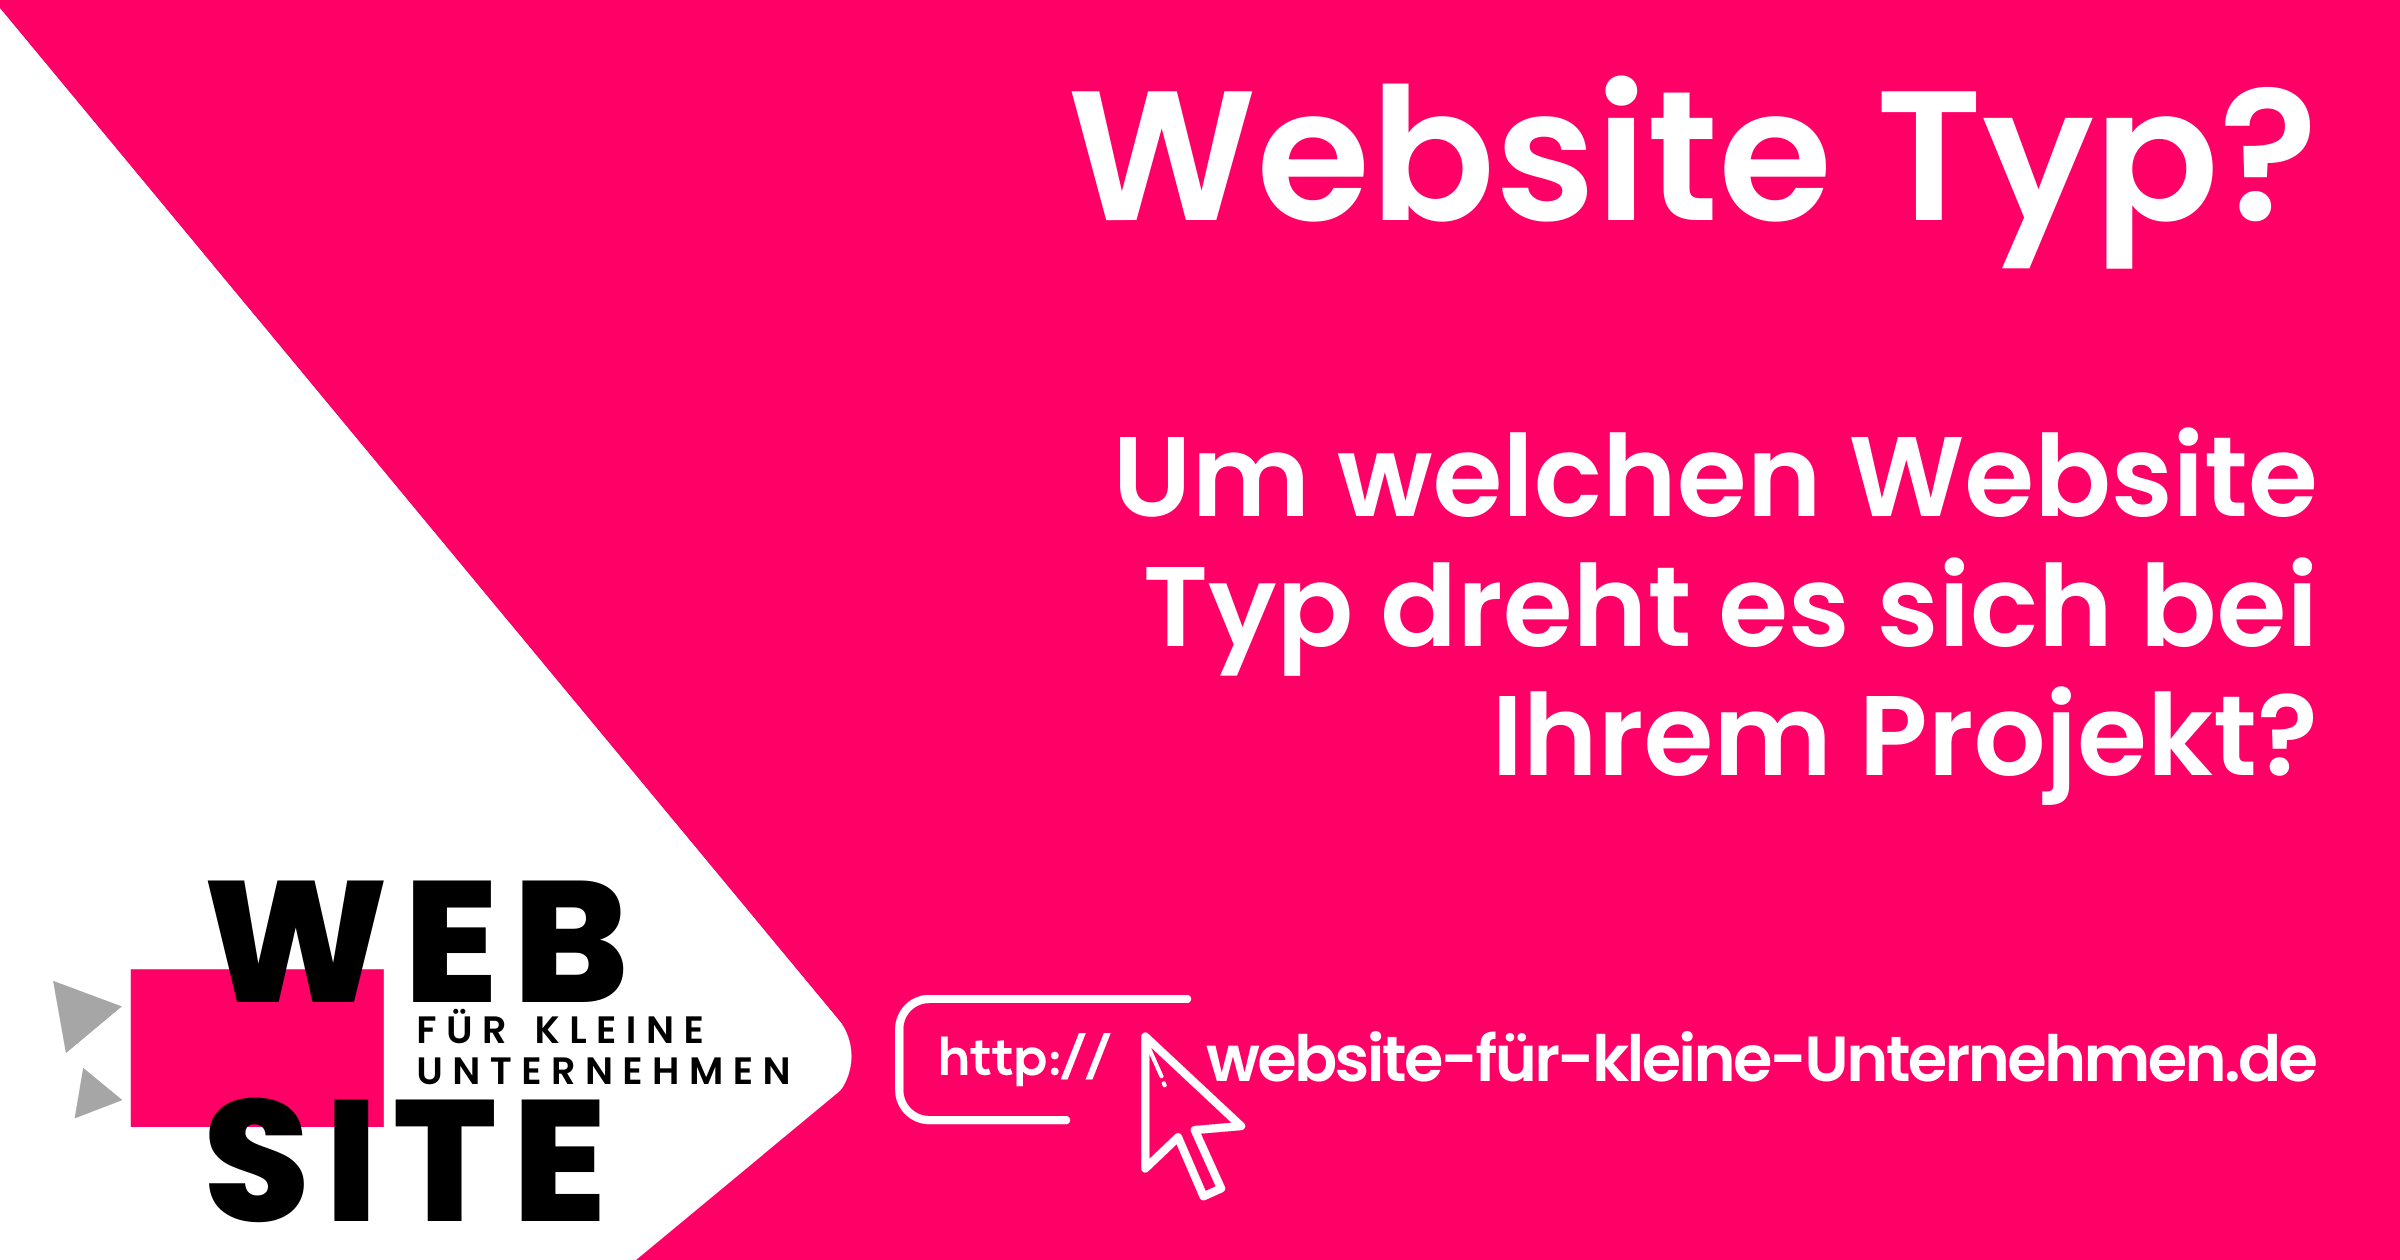 website-für-kleine-unternehmen - Website Erstellen lassen Preise - Website Typ